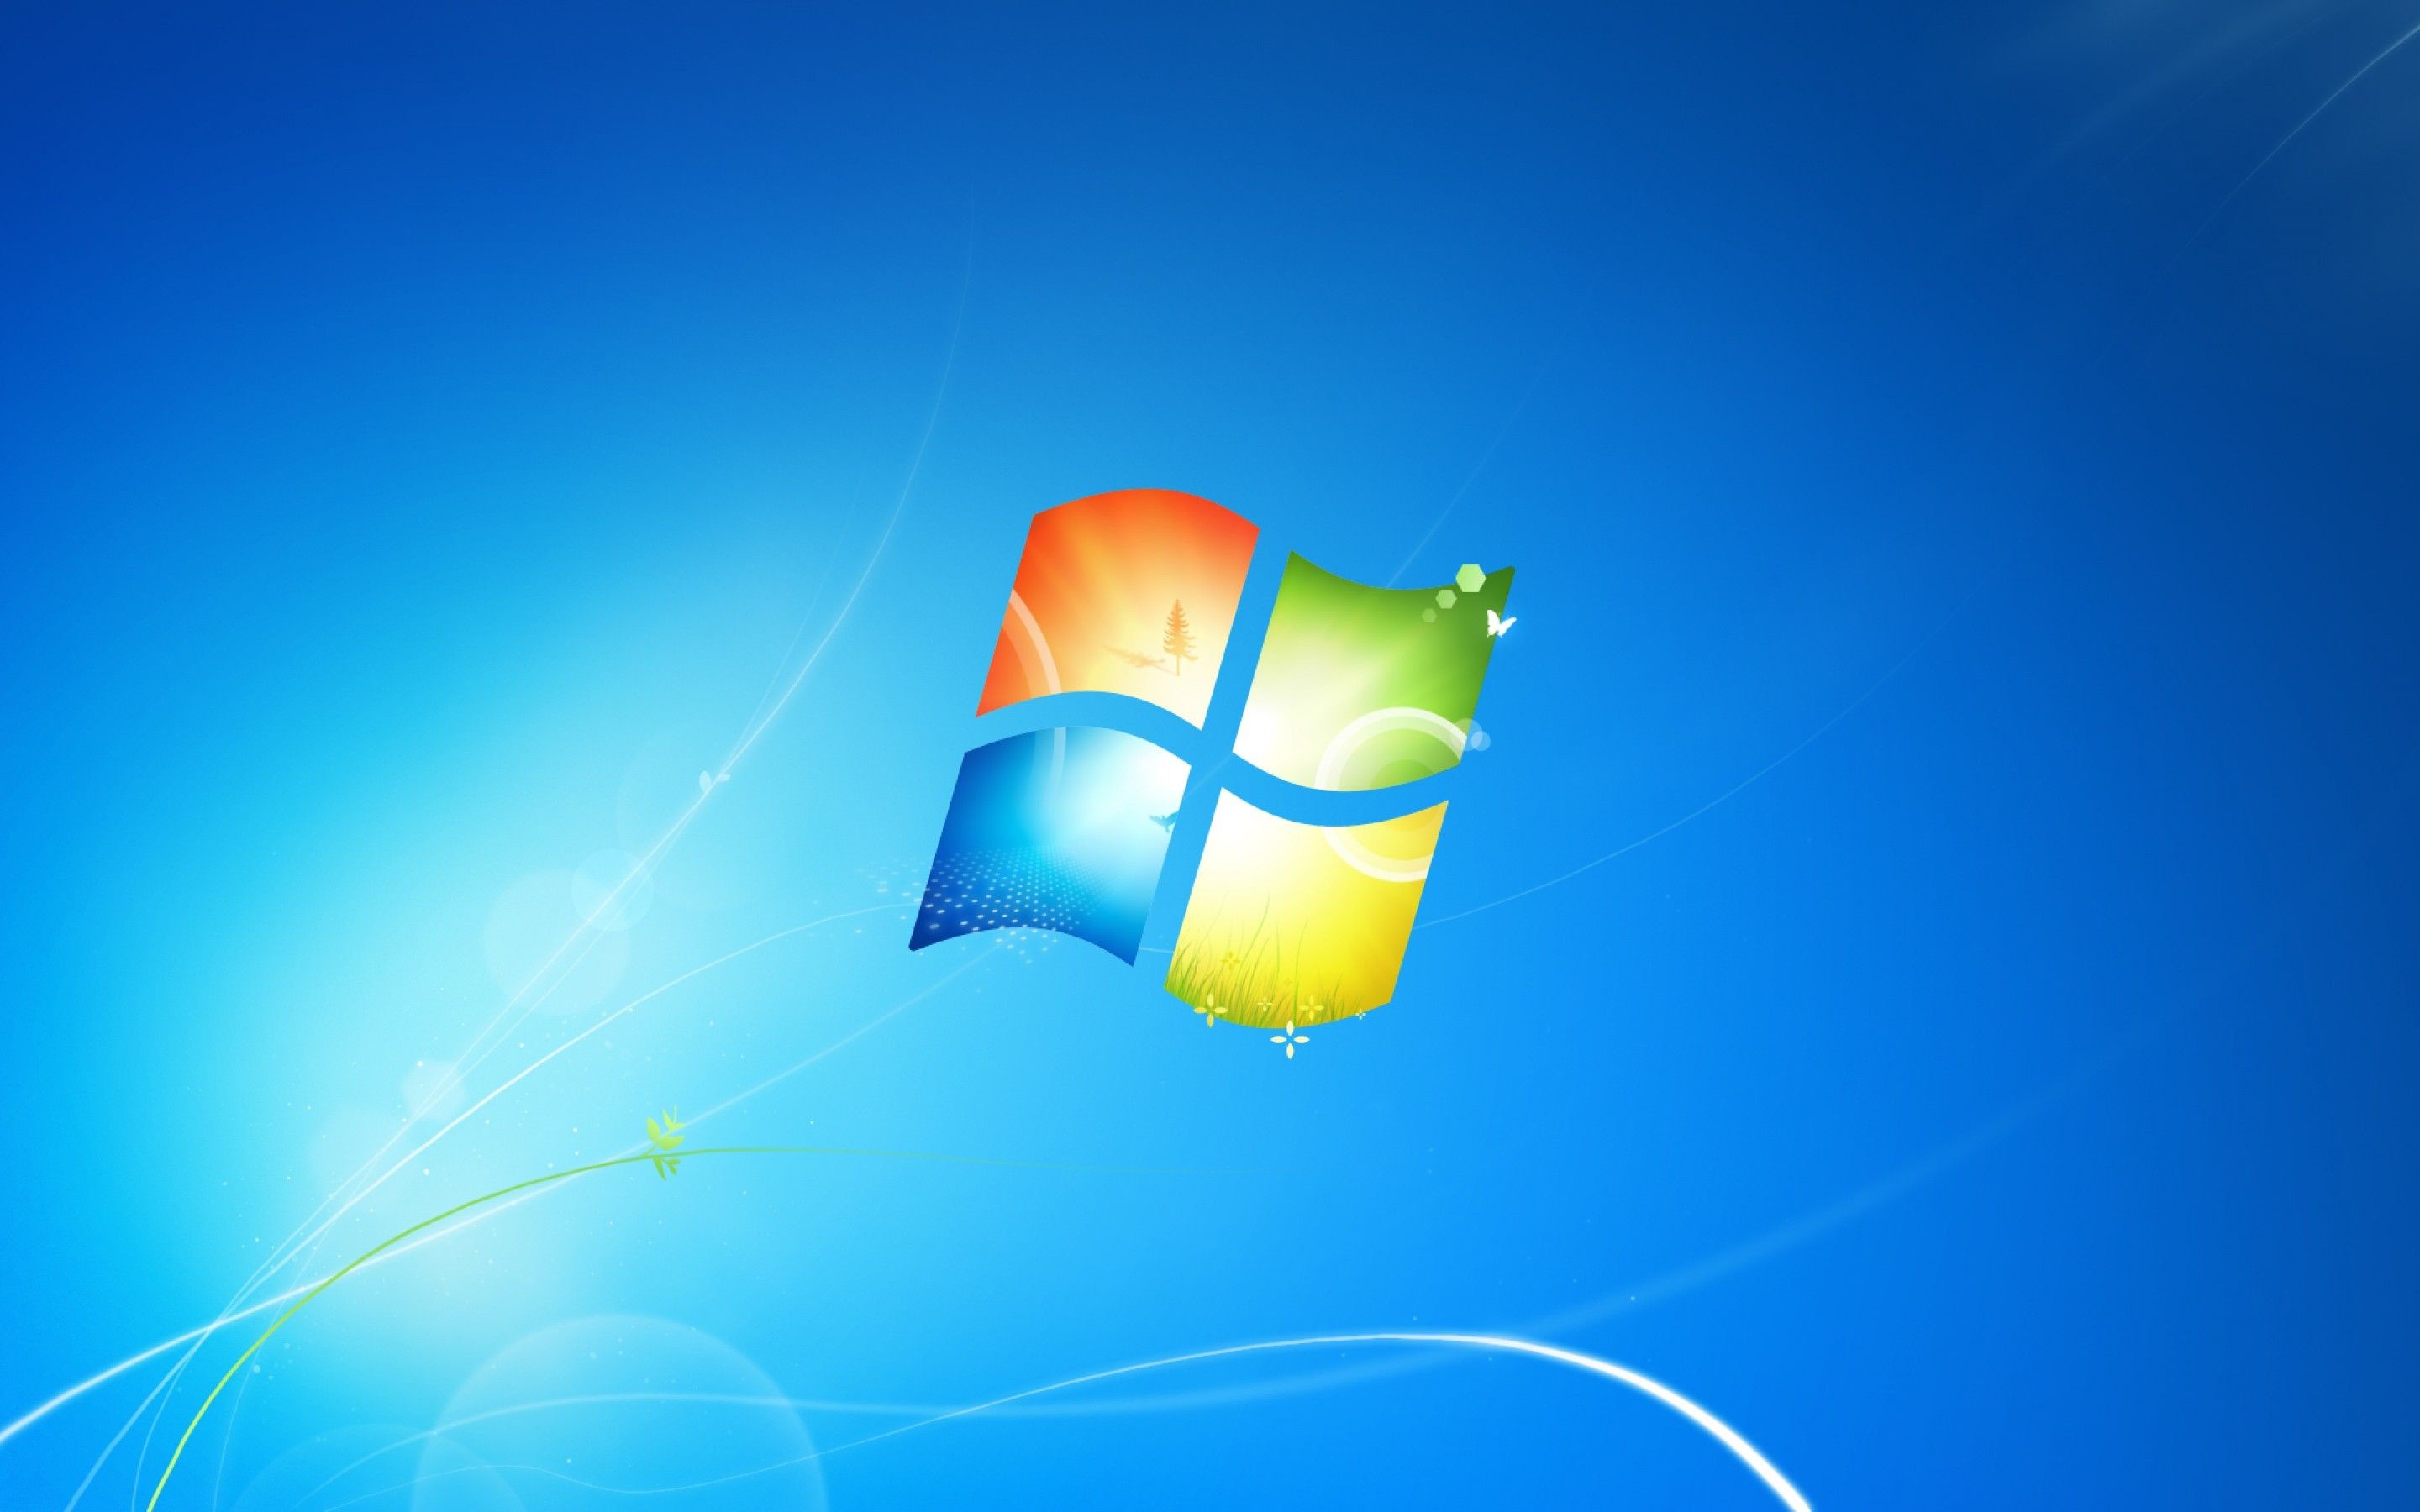 Hình nền desktop Microsoft Windows 7 sẽ đem đến cho bạn một không gian làm việc hiện đại, tinh tế và sang trọng. Với nhiều màu sắc và chất liệu khác nhau, bạn sẽ tìm thấy cho mình bức hình nền hoàn hảo, phù hợp với phong cách của mình.